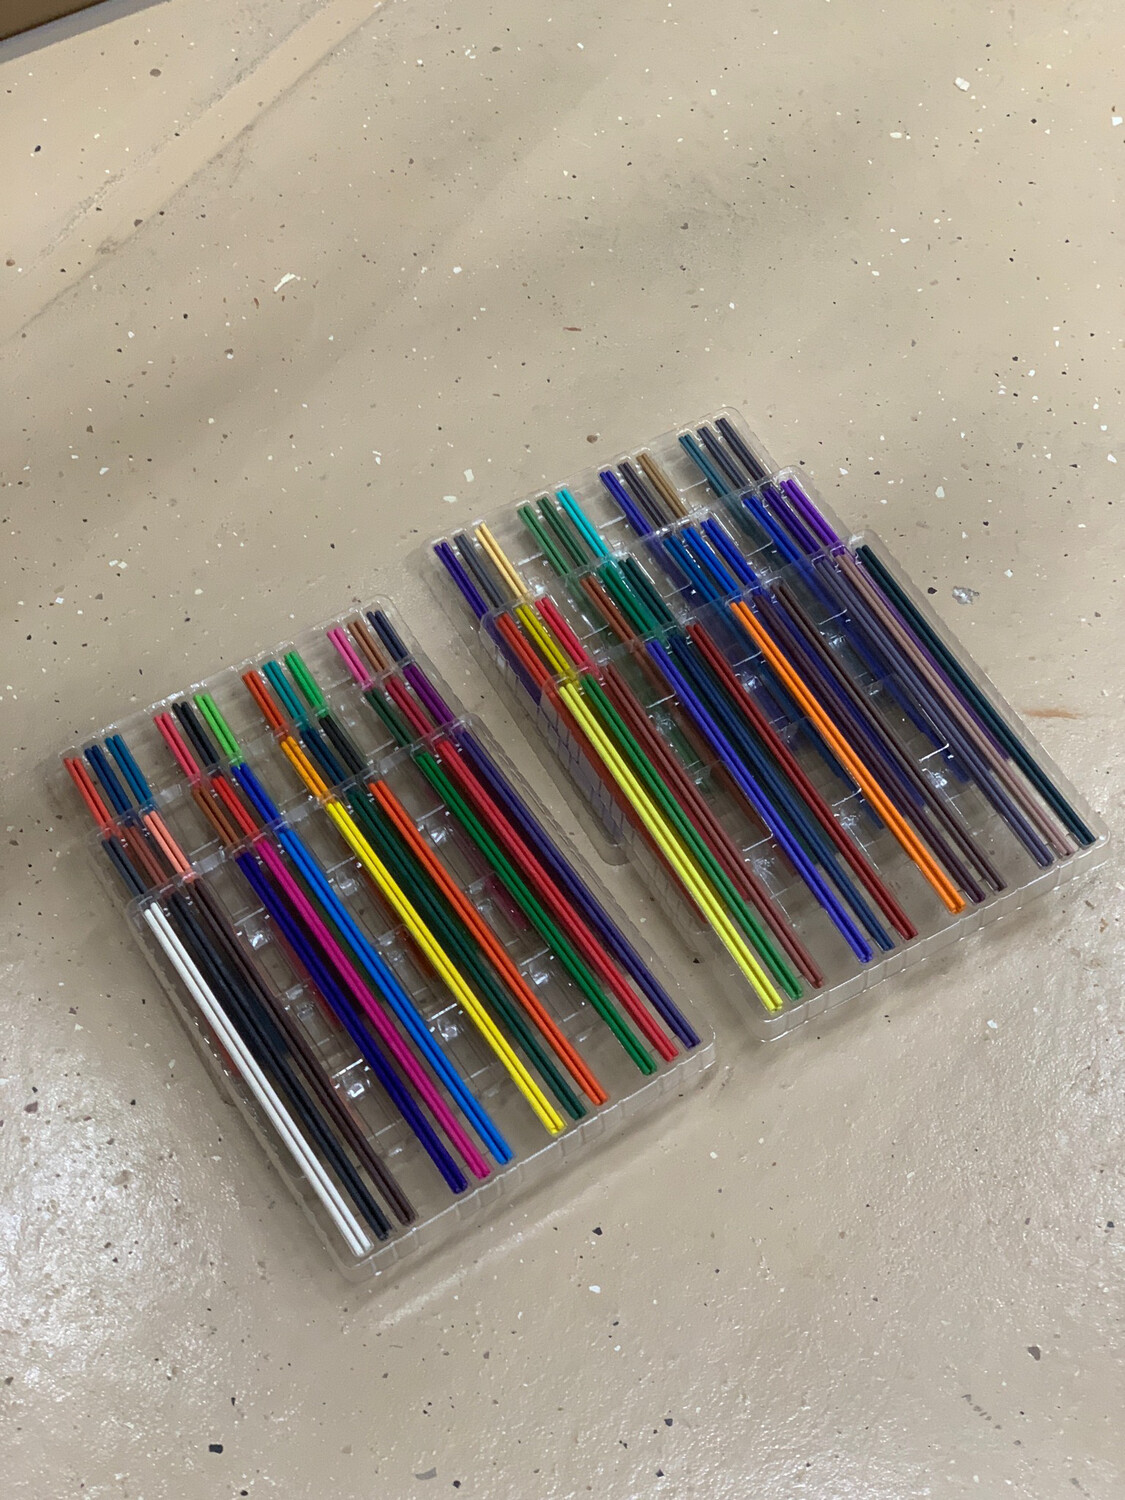 72 Colors Artist pencil Lead